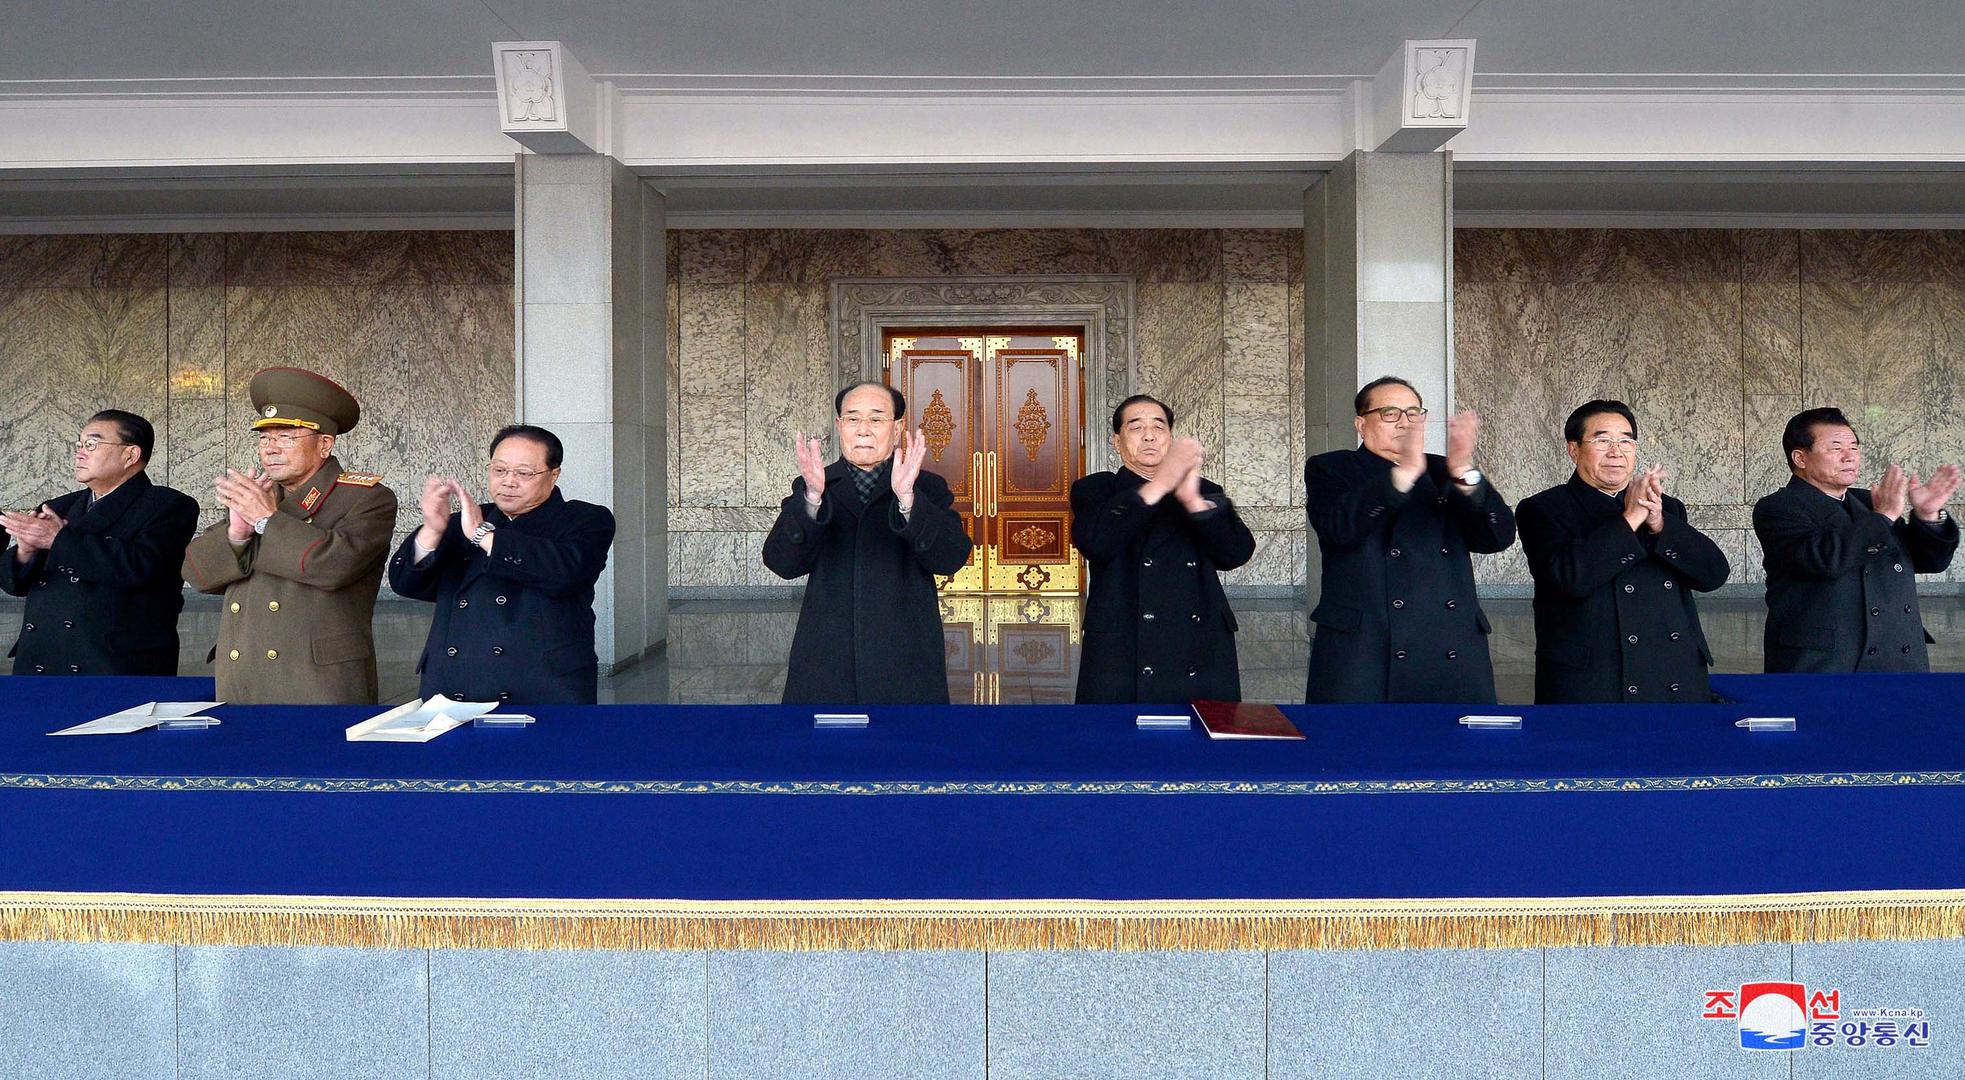 "Slavimo uspješno ispaljivanje Hwasong-15 koje je pokazalo snagu i moć Sjeverne Koreje ostatku svijeta", moglo se pročitati na transparentu gomile.
